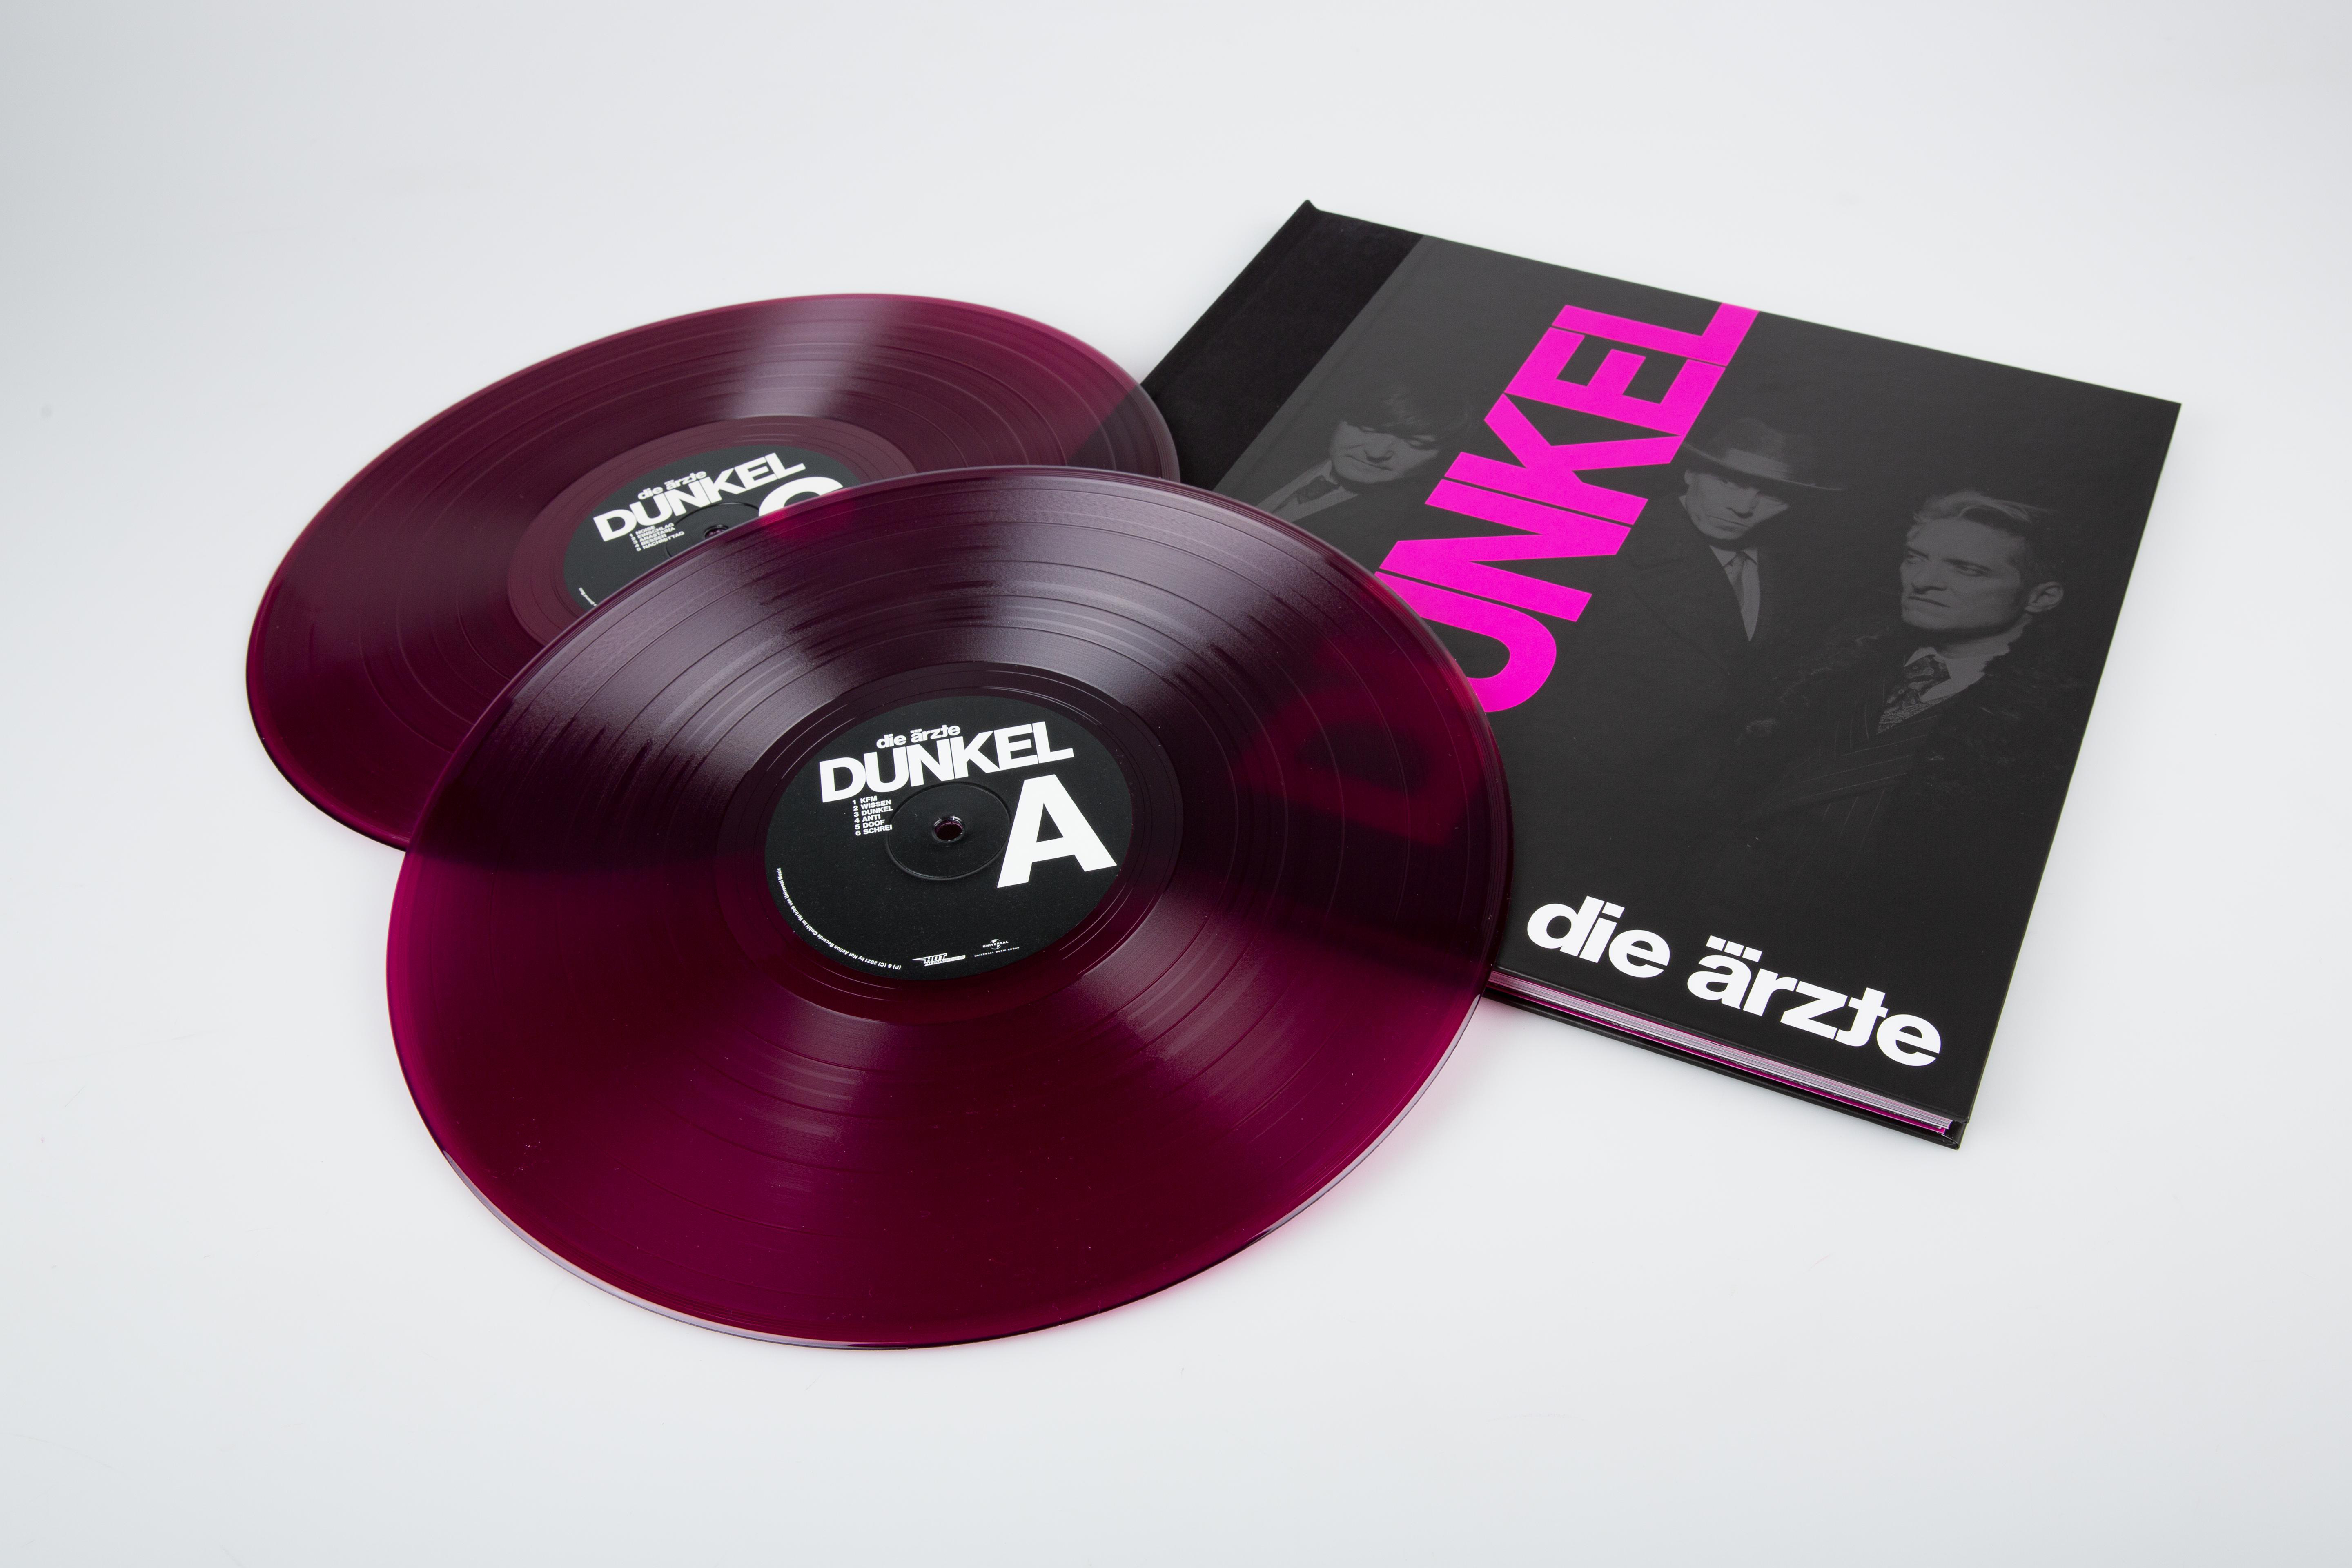 (Ltd. (Vinyl) DUNKEL Doppelvinyl Girlande, lila-pink) mit halbtransparentes - Ärzte - im Schuber Die